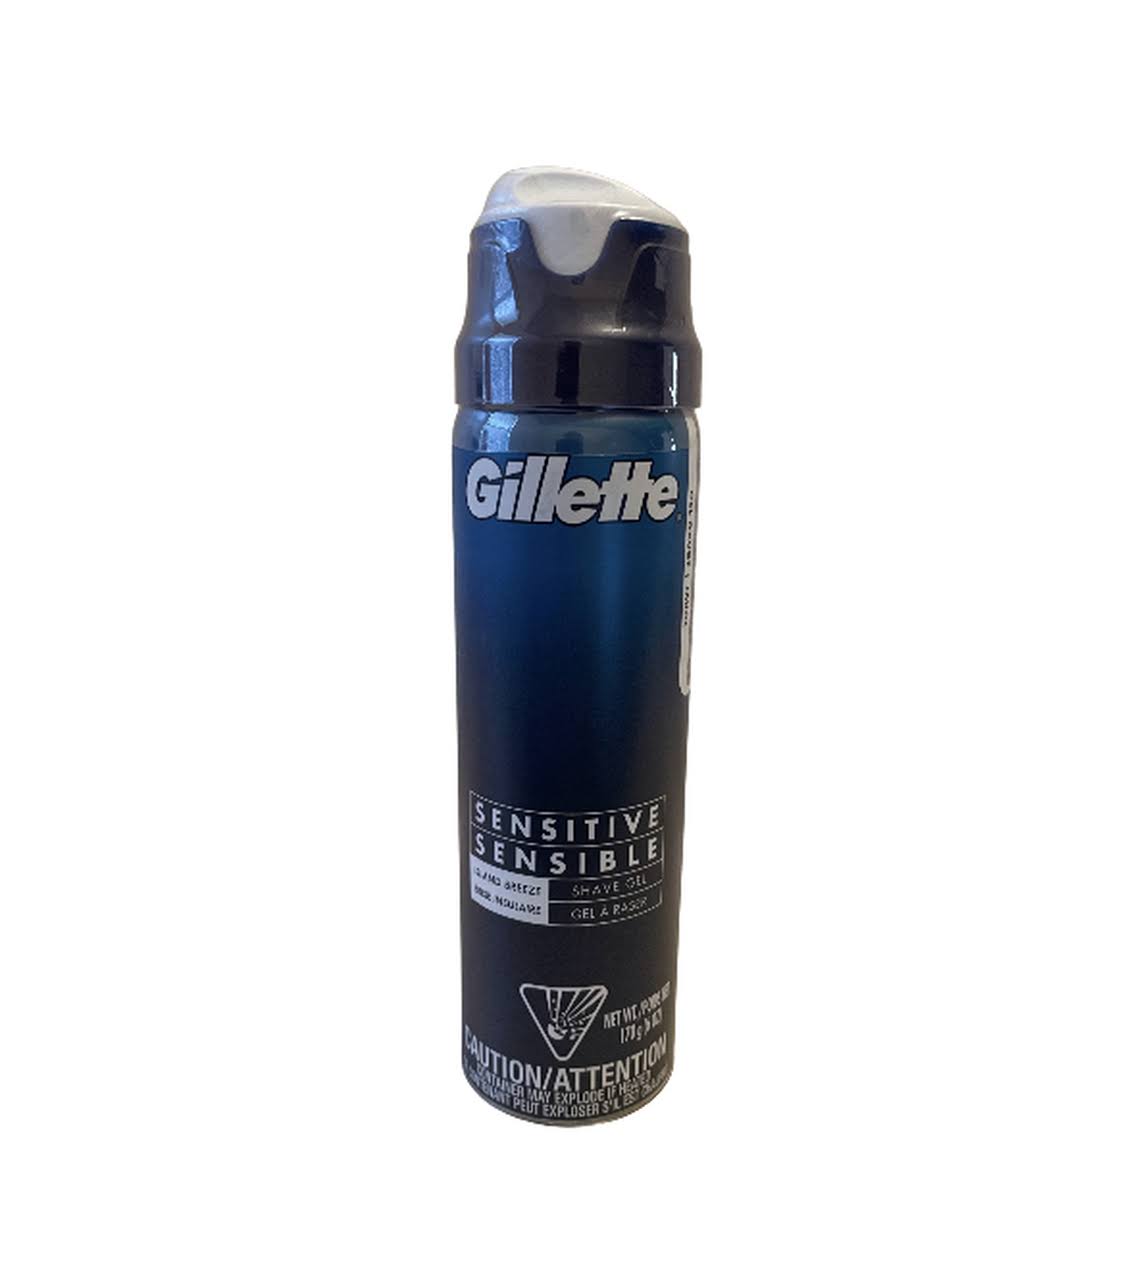 Gillette Sensitive Shave Gel, Island Breeze Scent